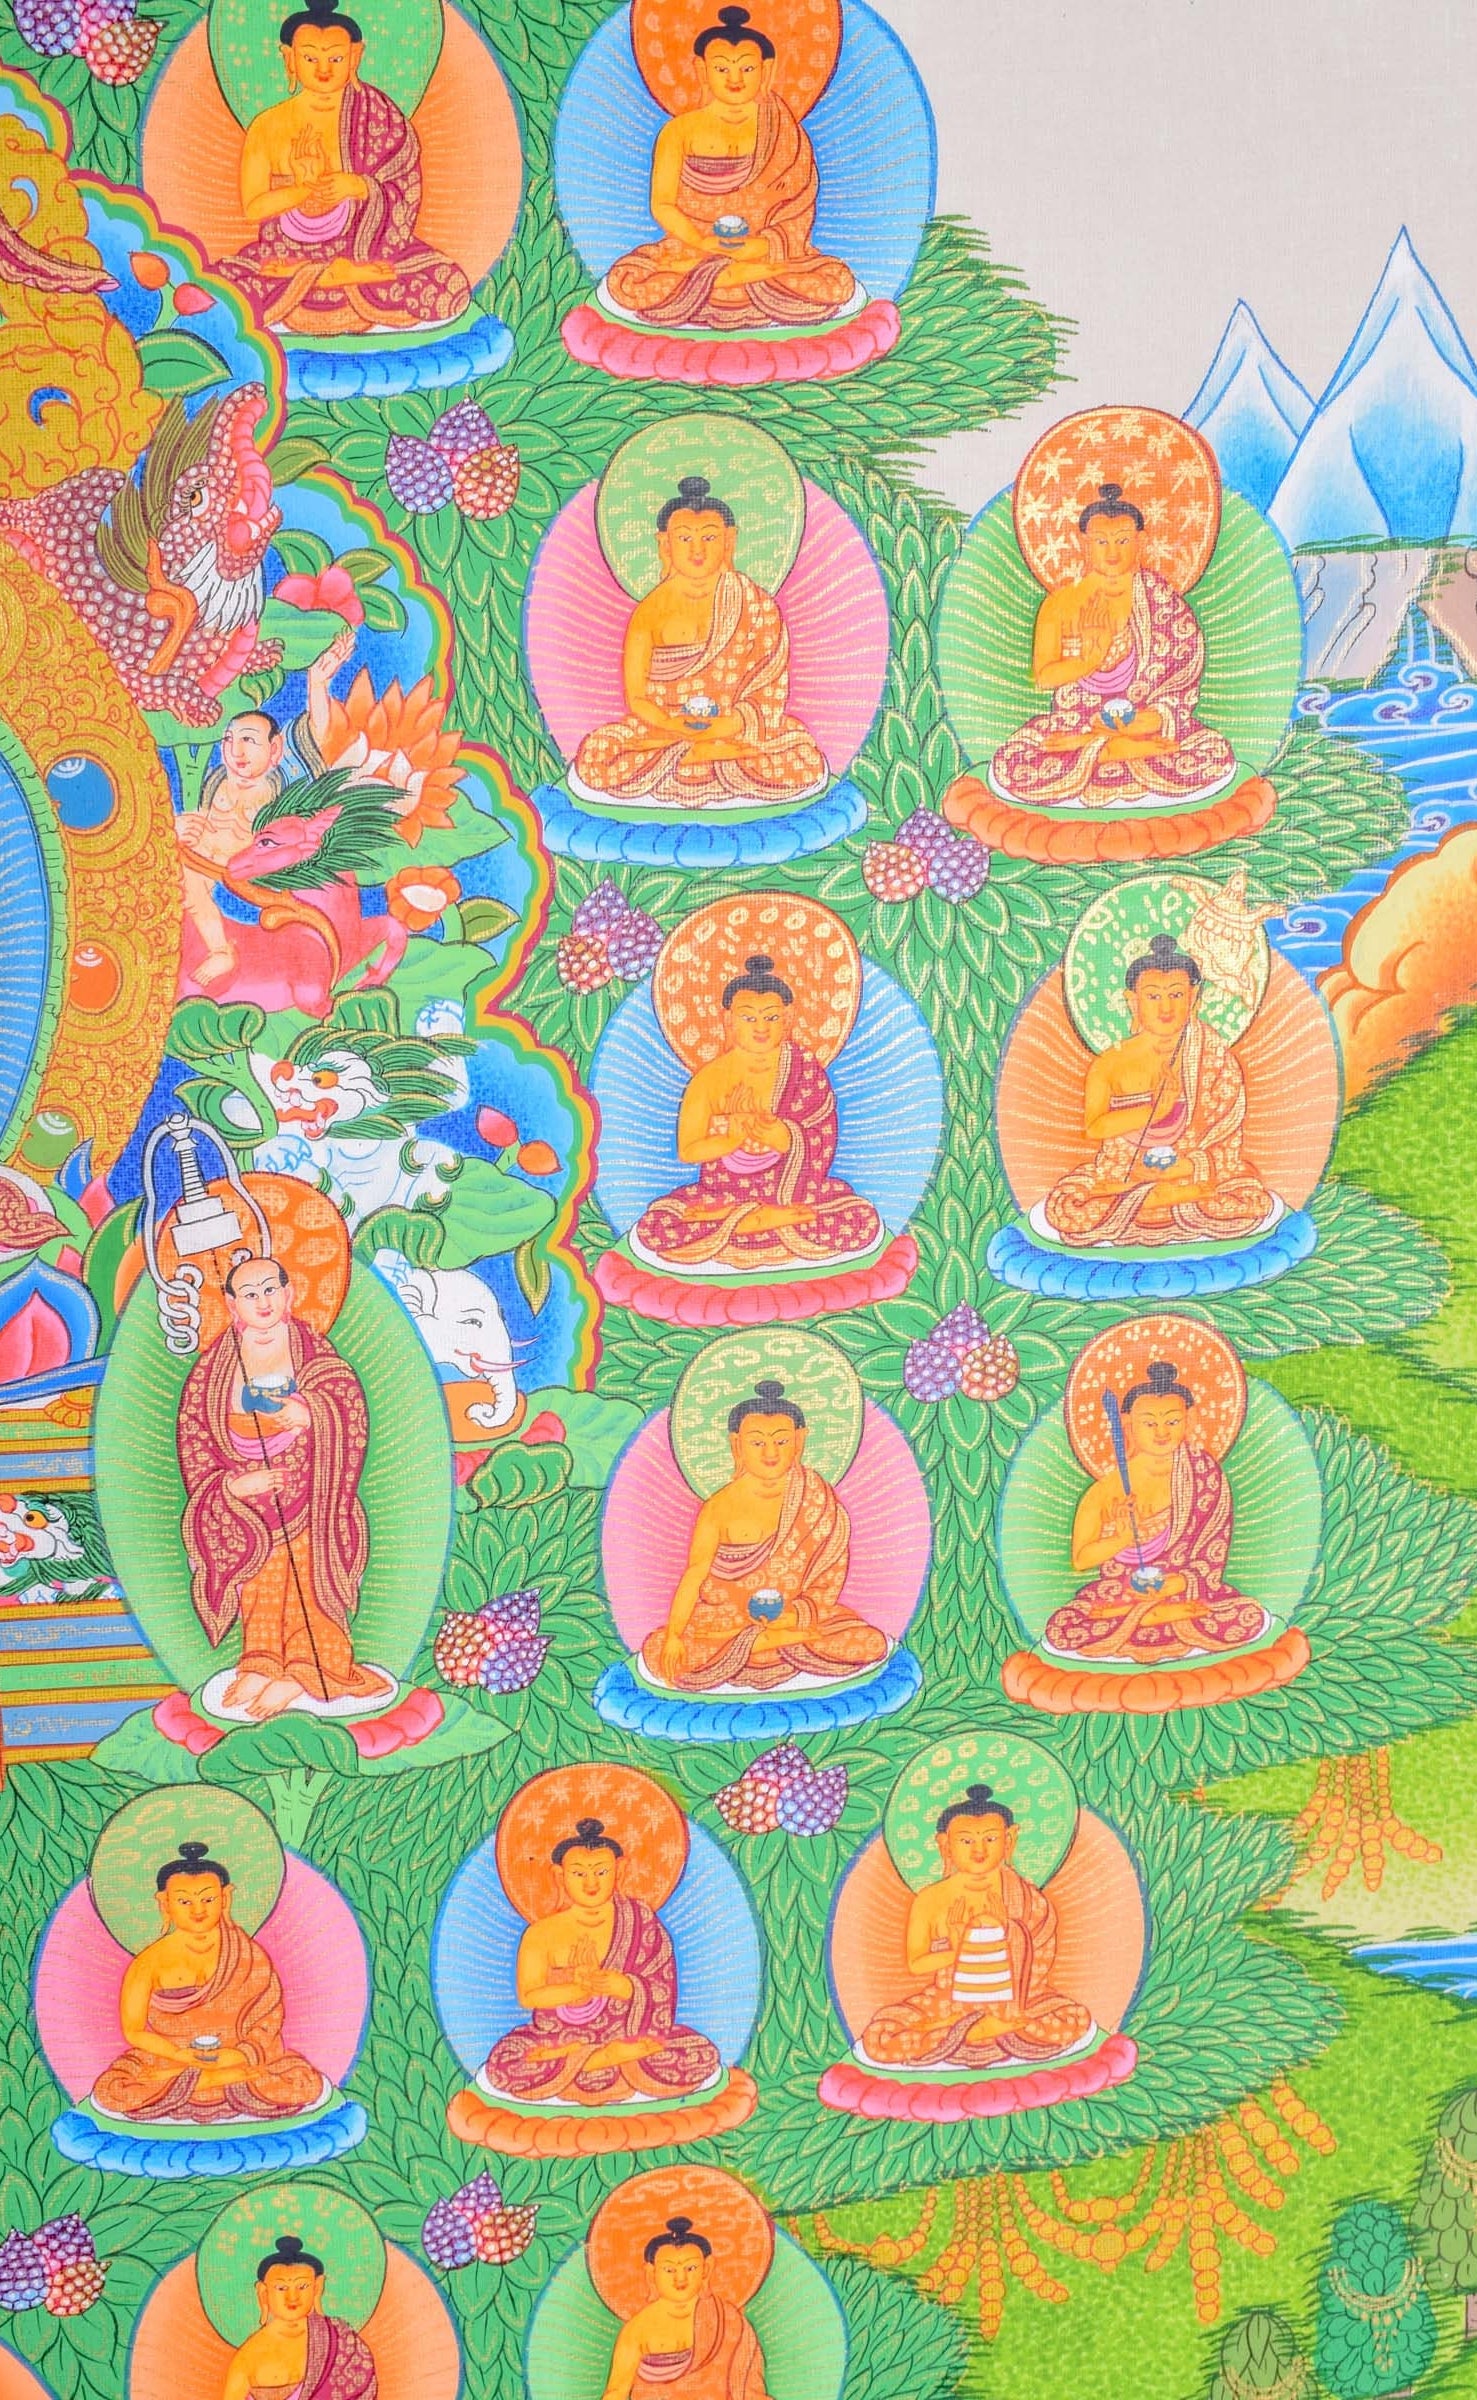 35 Buddha Thanka Art with Shakyamuni - Lucky Thanka